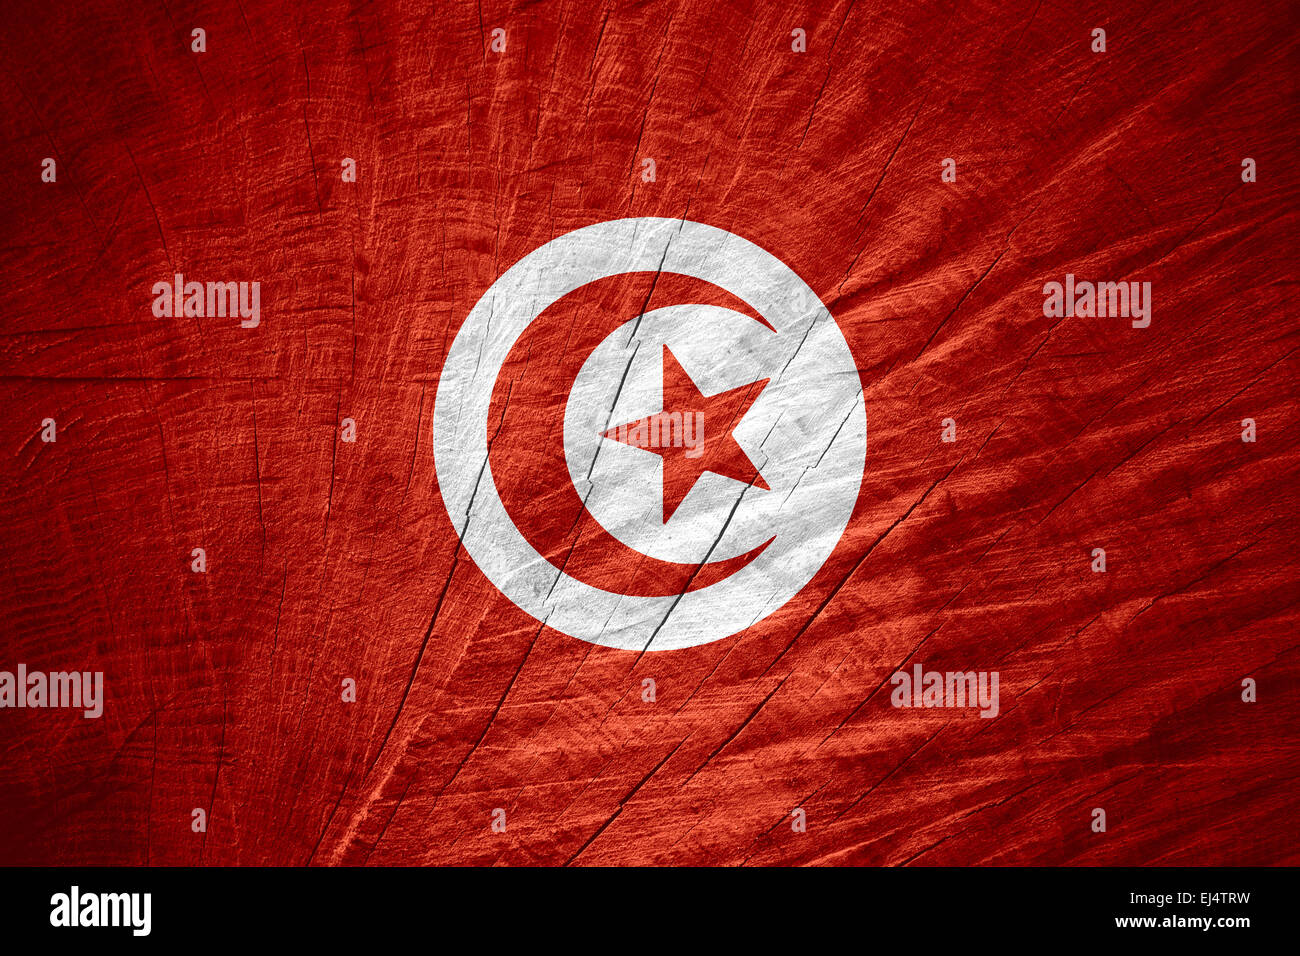 Drapeau Tunisie tunisien ou bannière sur la texture en bois Banque D'Images